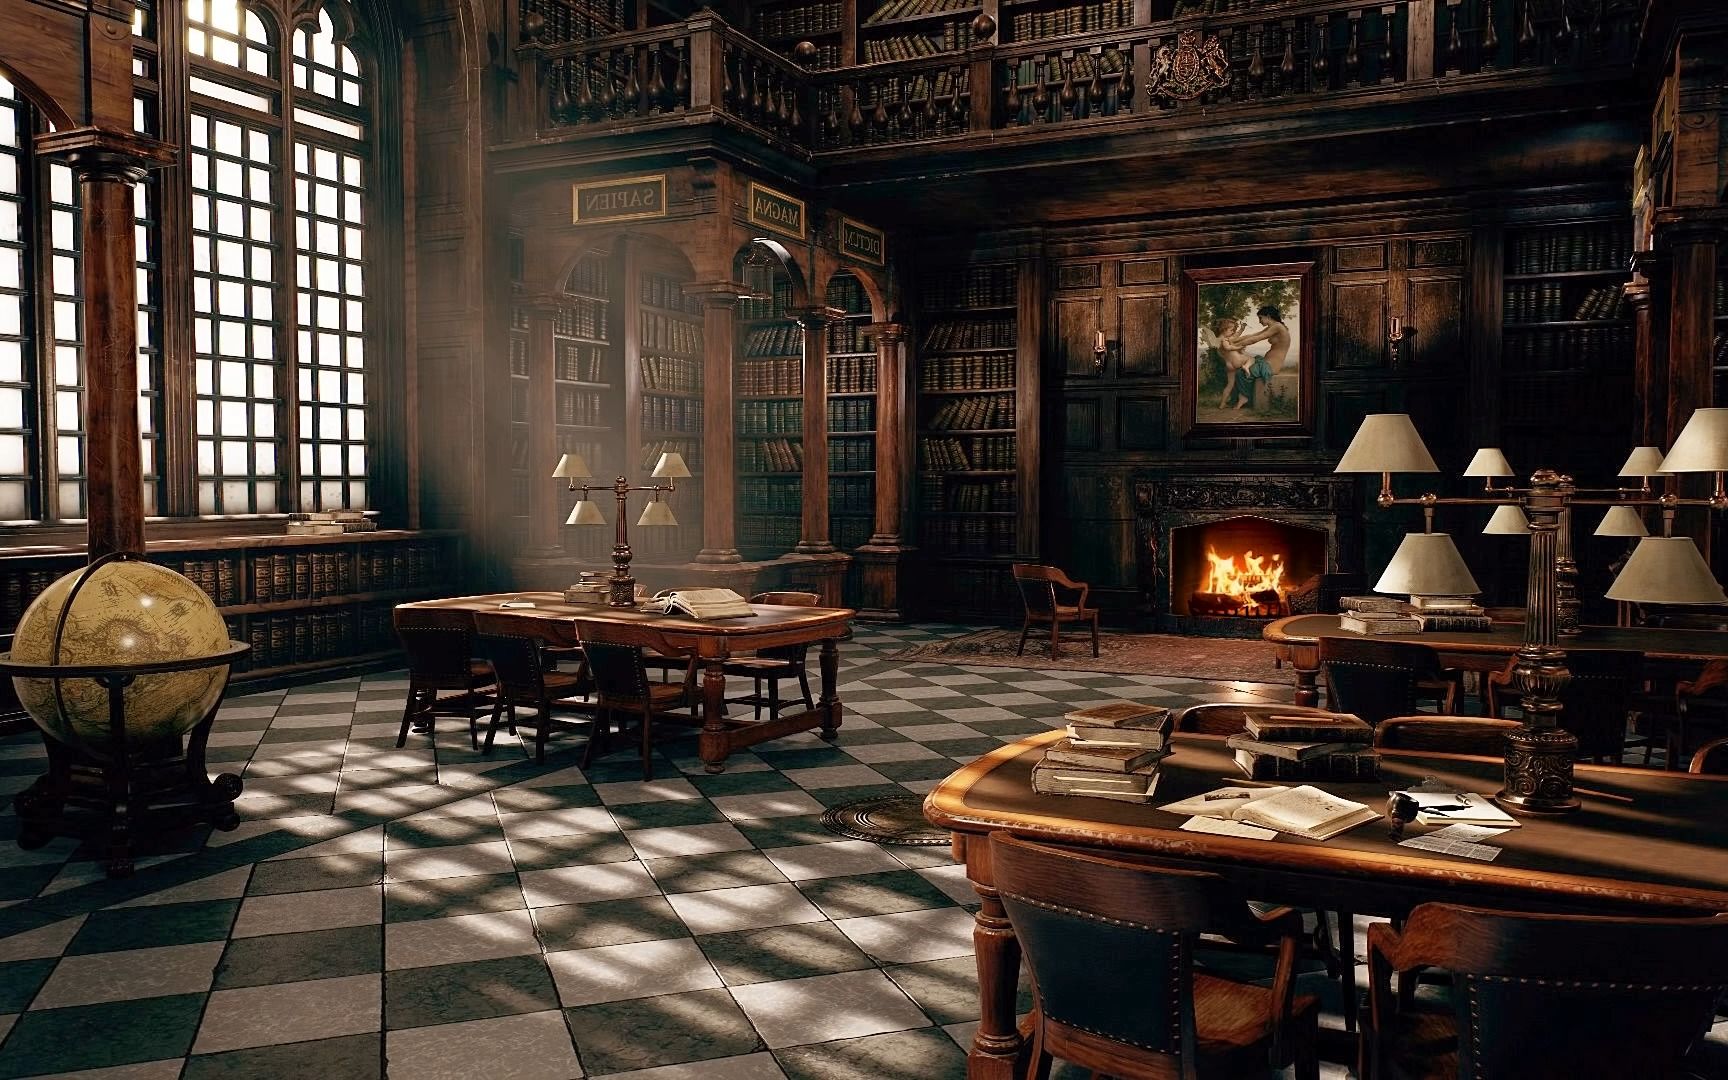 霍格沃茨古典图书馆 哈利波特风格 壁炉劈啪作响 白噪音用于学习,冥想